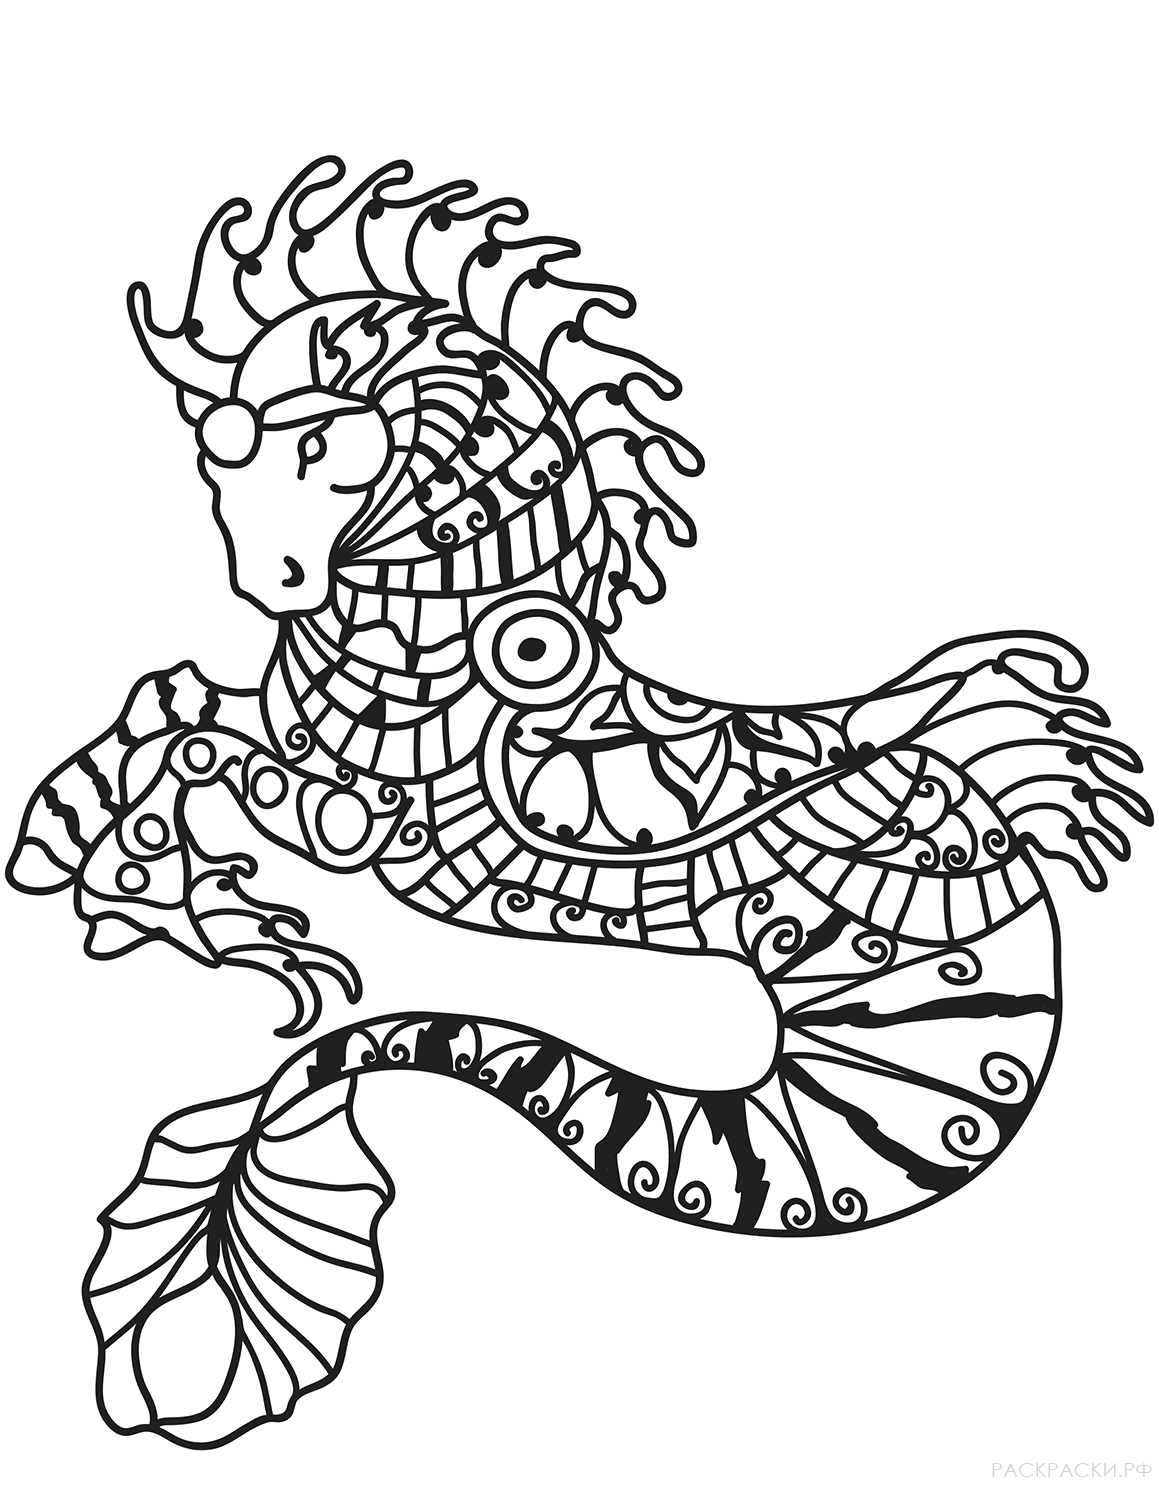 Раскраска Морской конёк в технике дзентангл